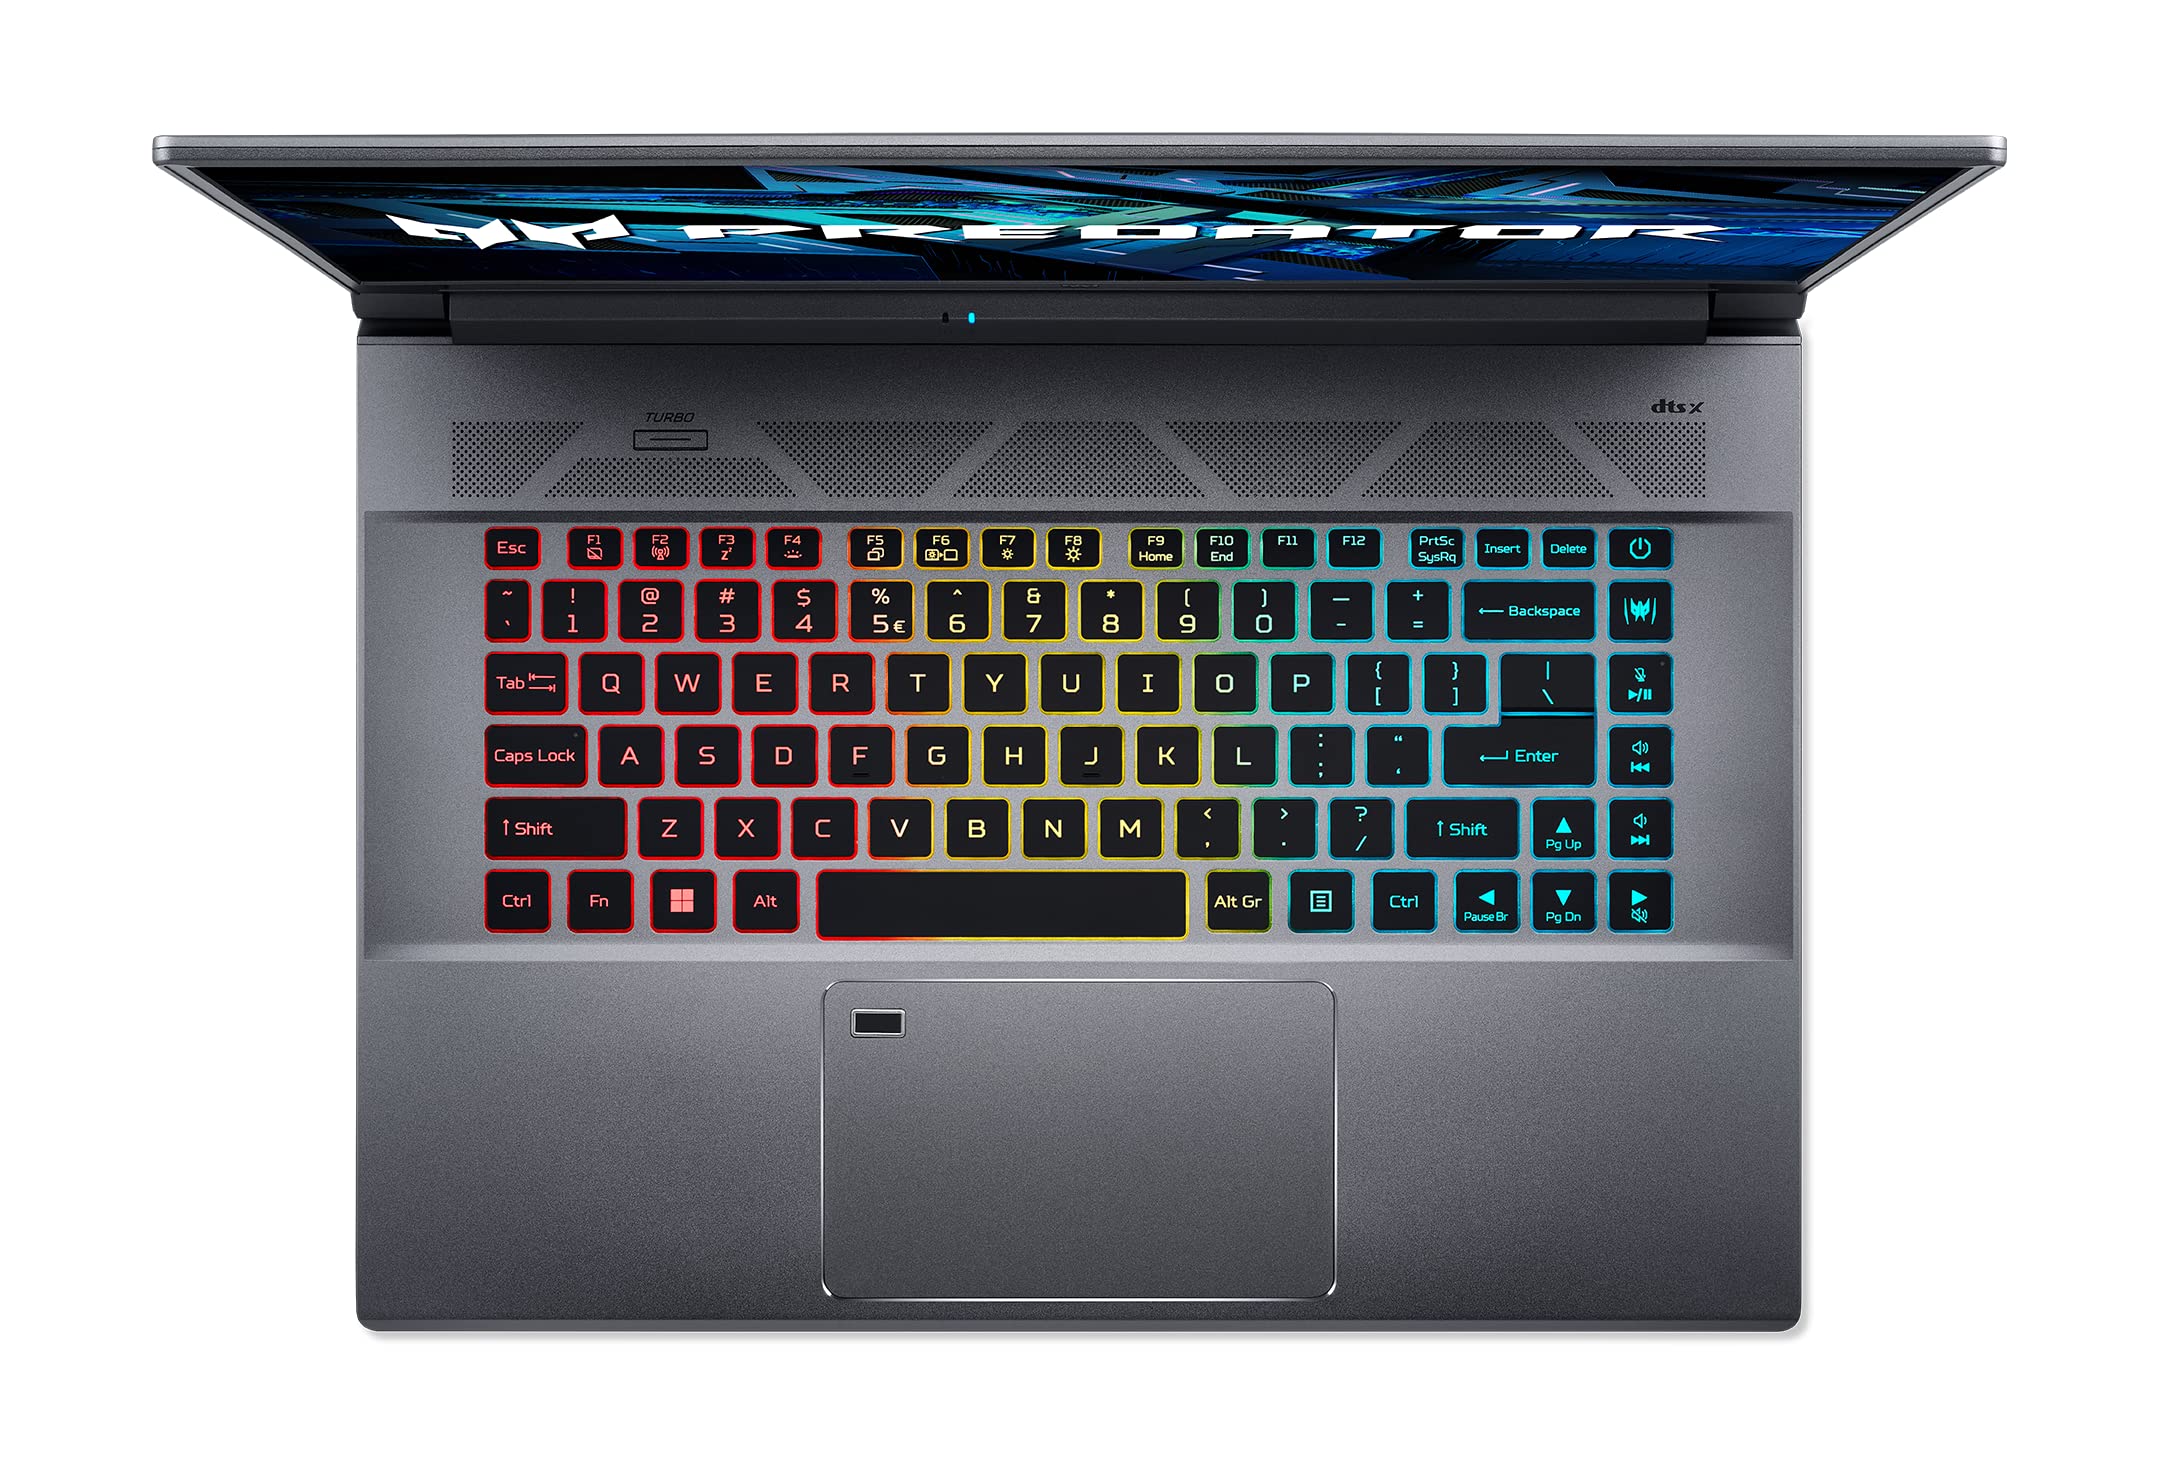 Acer Predator Triton 500 SE Gaming/Creator Laptop | 12th Gen Intel i9-12900H | GeForce RTX 3080 Ti | 16